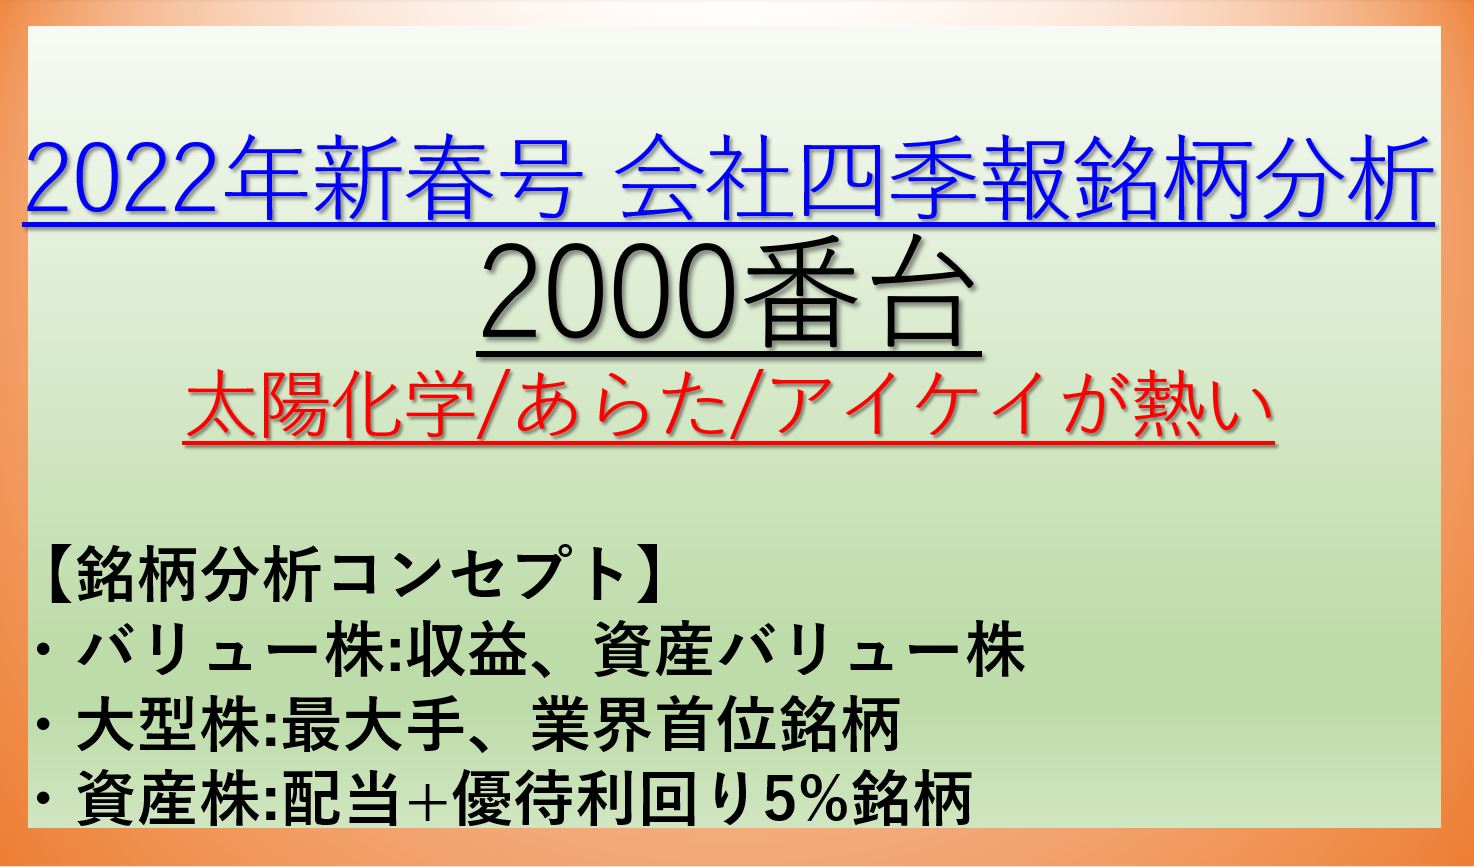 2022年新春号-会社四季報銘柄分析-2000番台